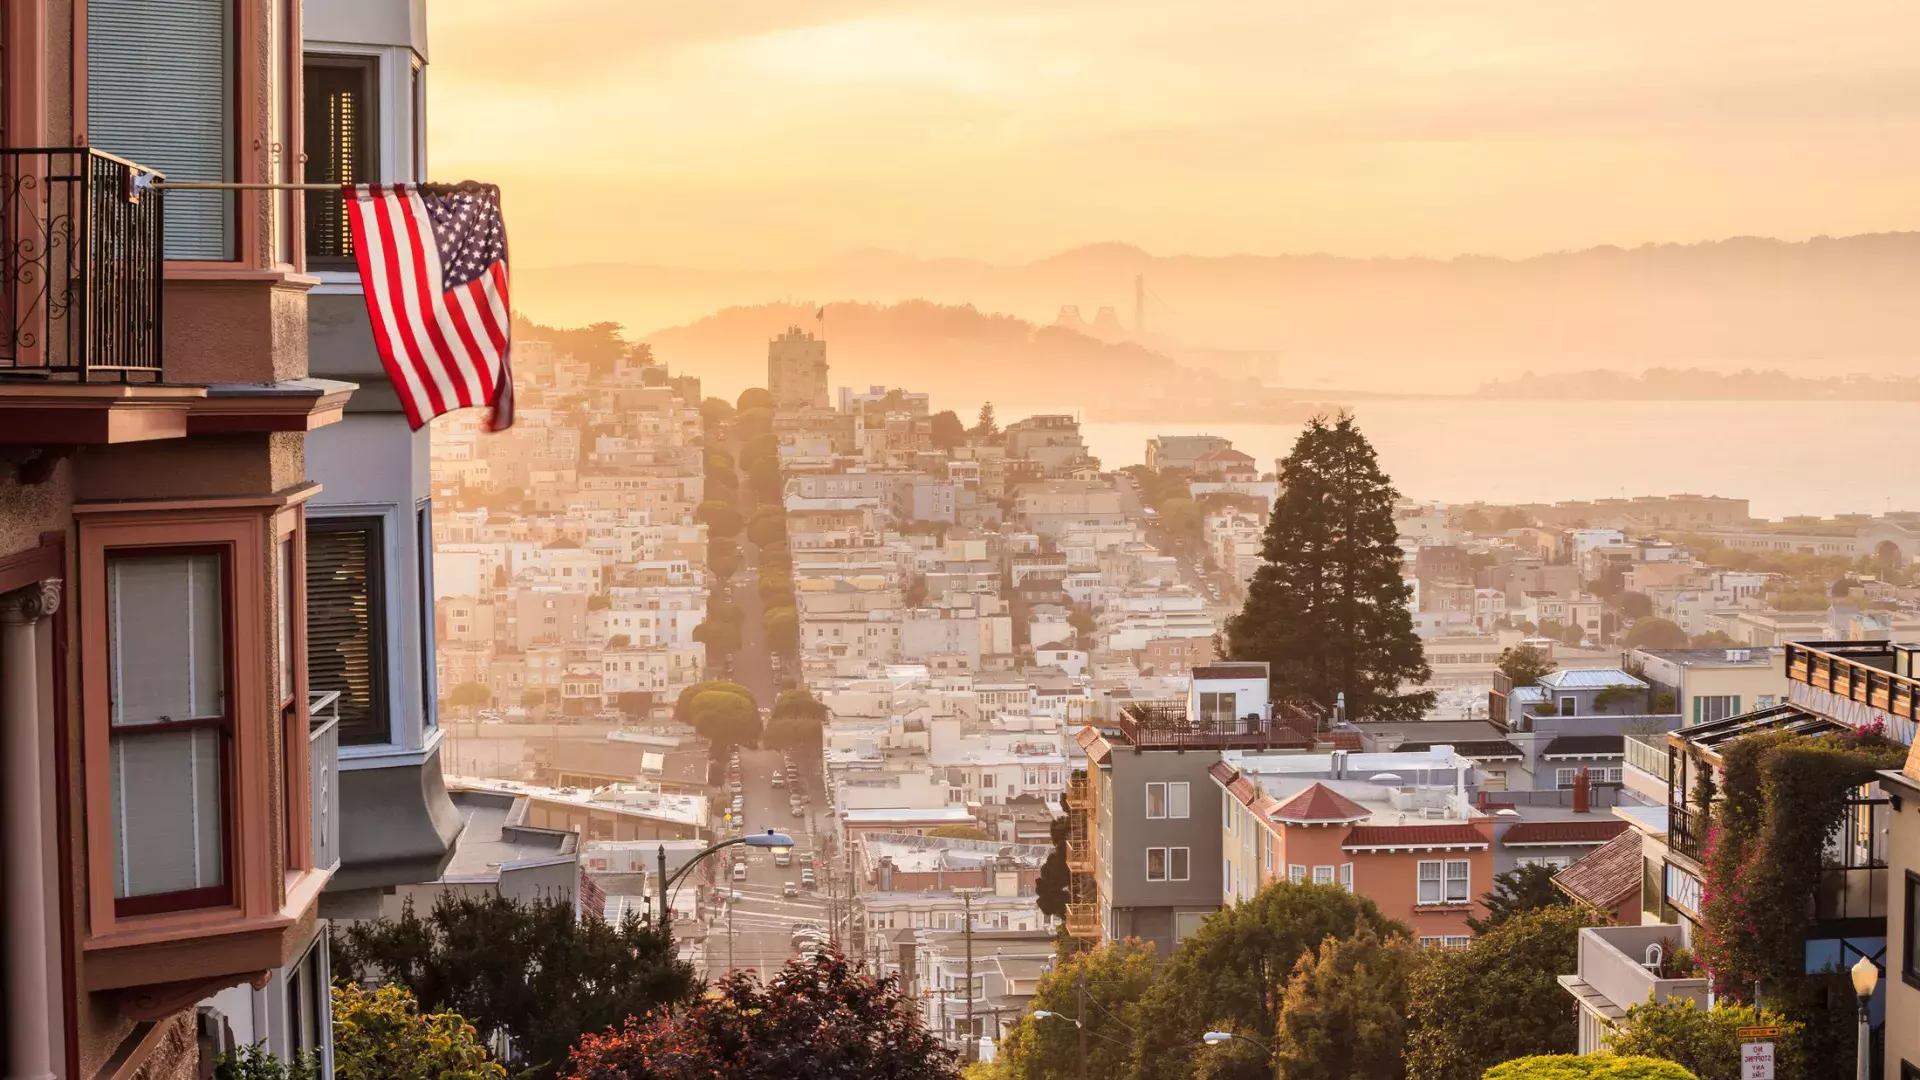 Una vista de San Francisco desde lo alto de una colina, con una bandera estadounidense ondeando en primer plano.